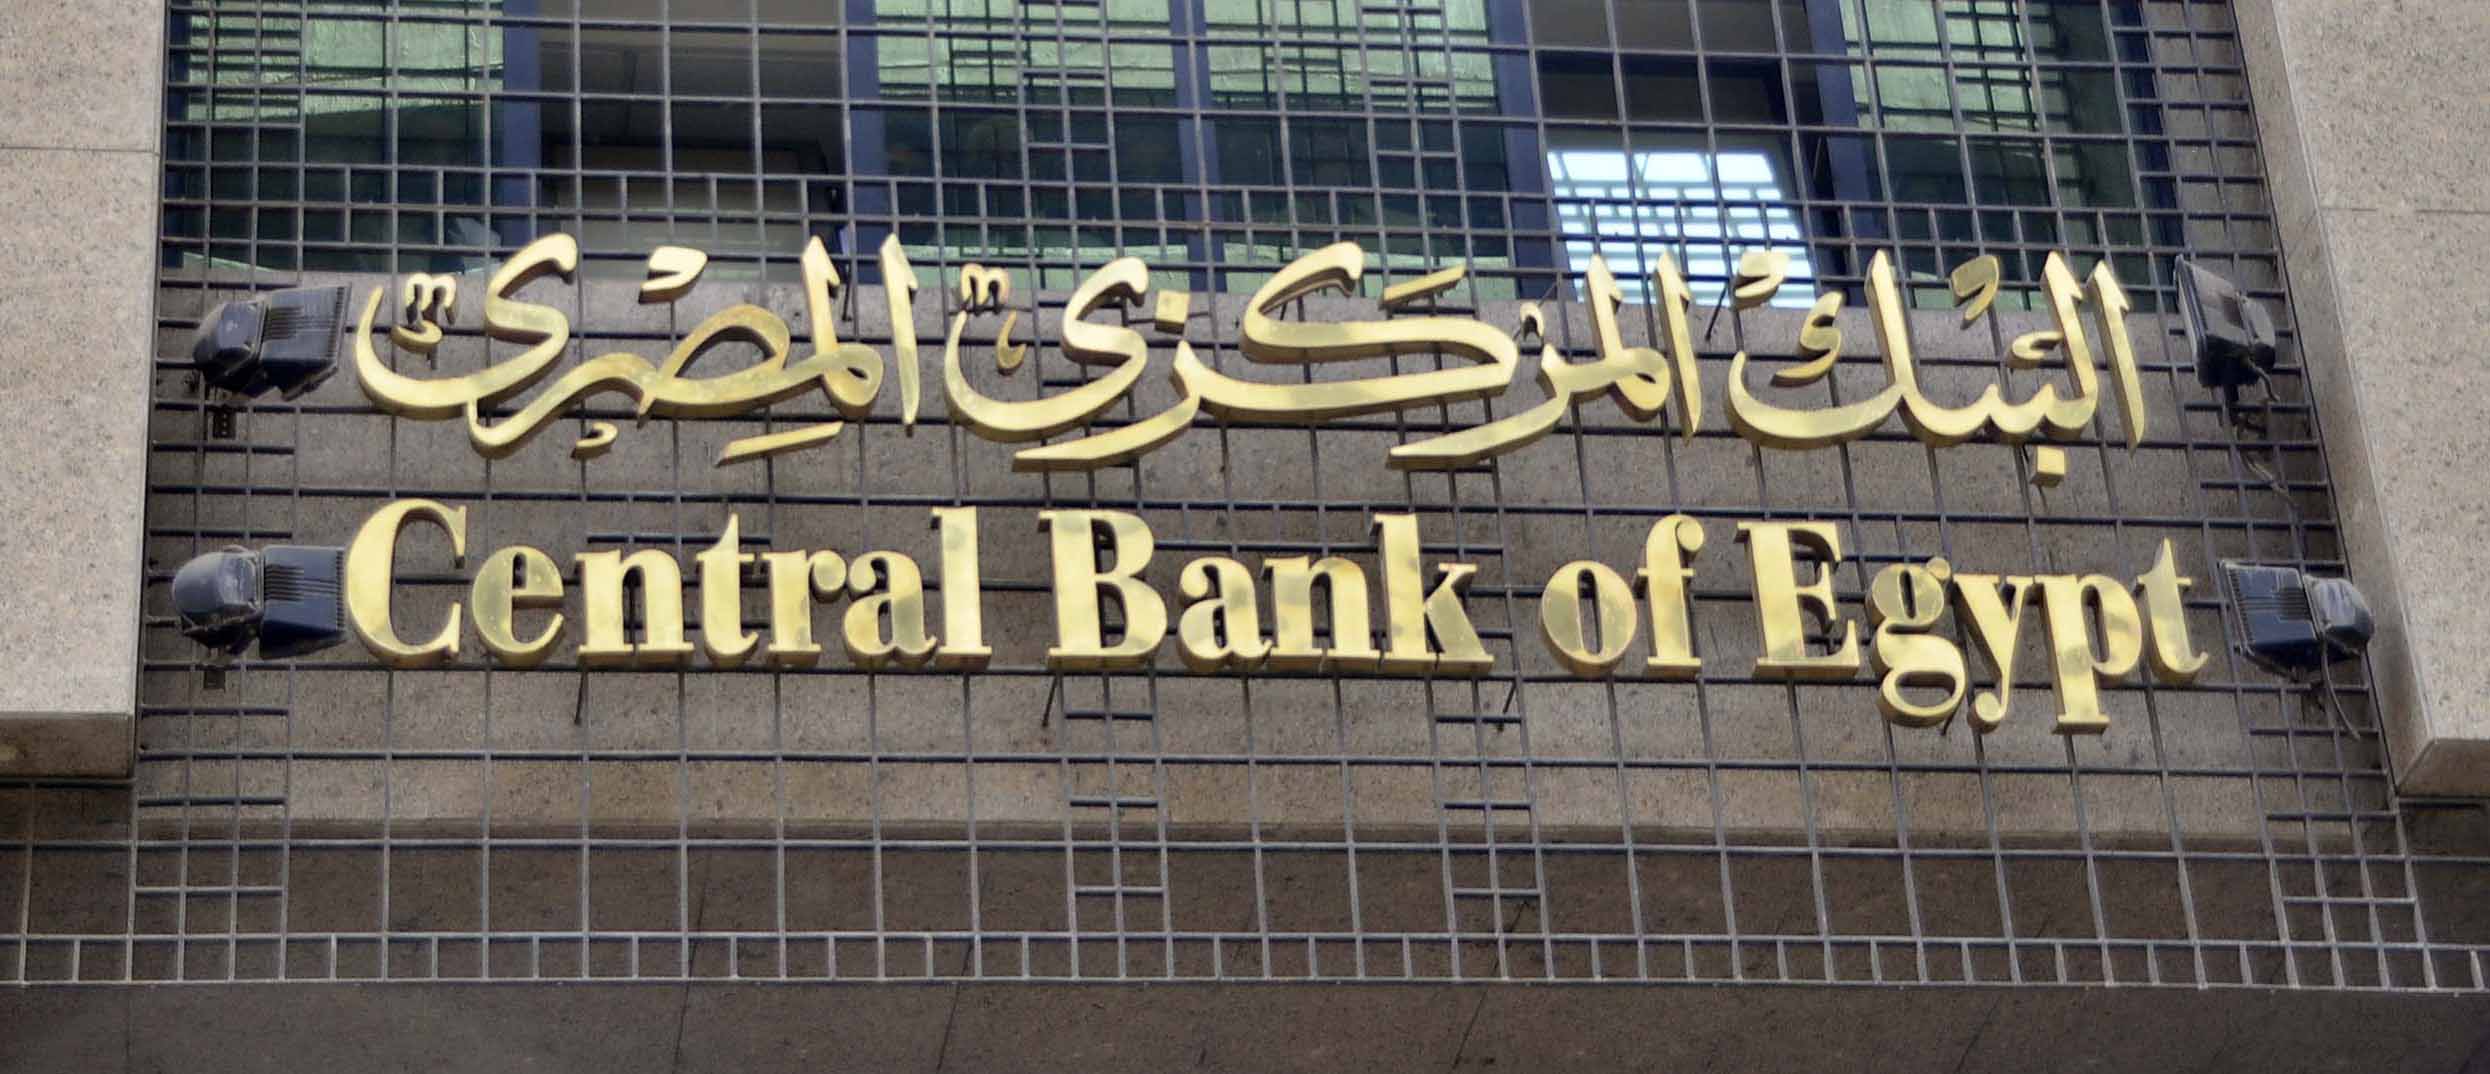   البورصة والبنوك عطلة رسمية ثلاثة أيام بمناسبة عيد الفطر المبارك